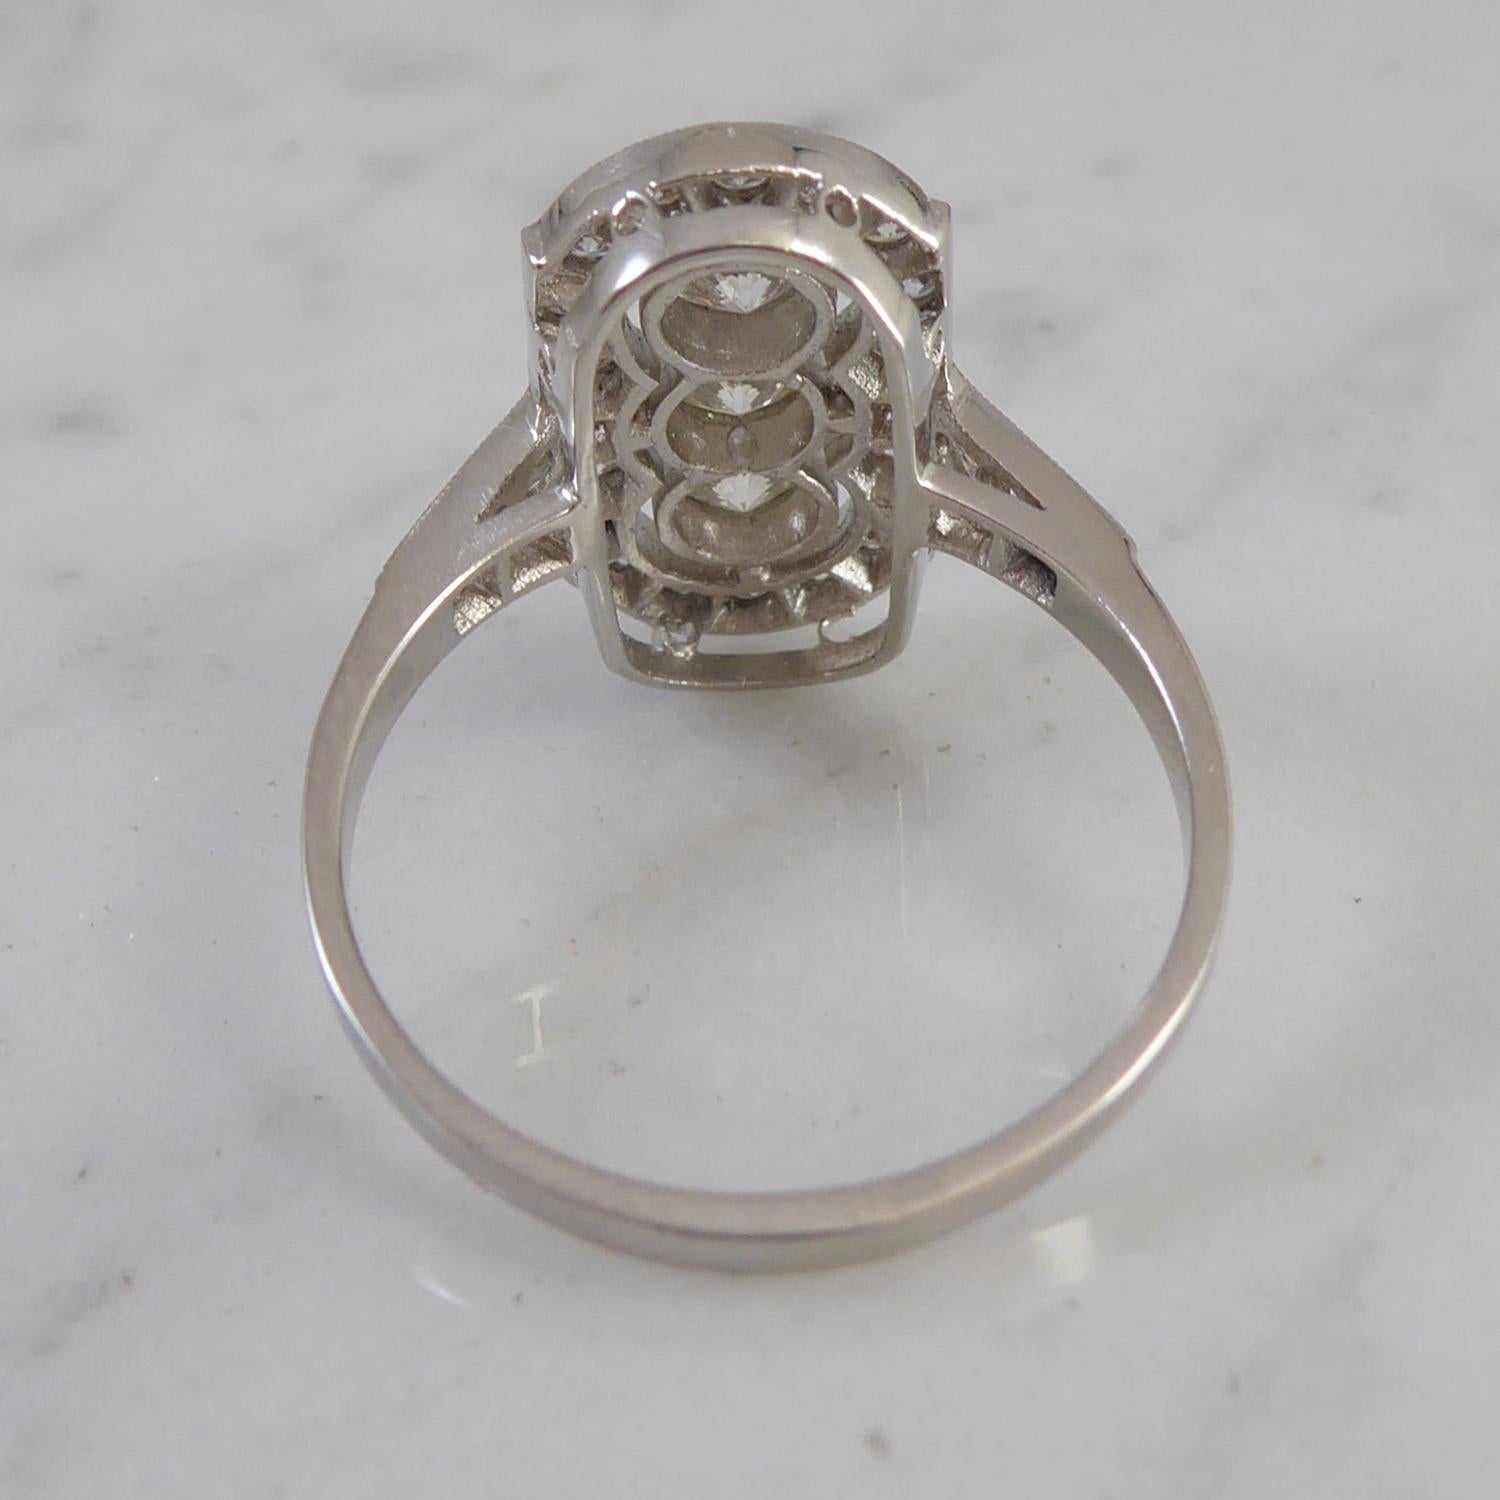 1.03 Carat Art Deco Style Diamond Ring in Plaque Setting, Platinum 1